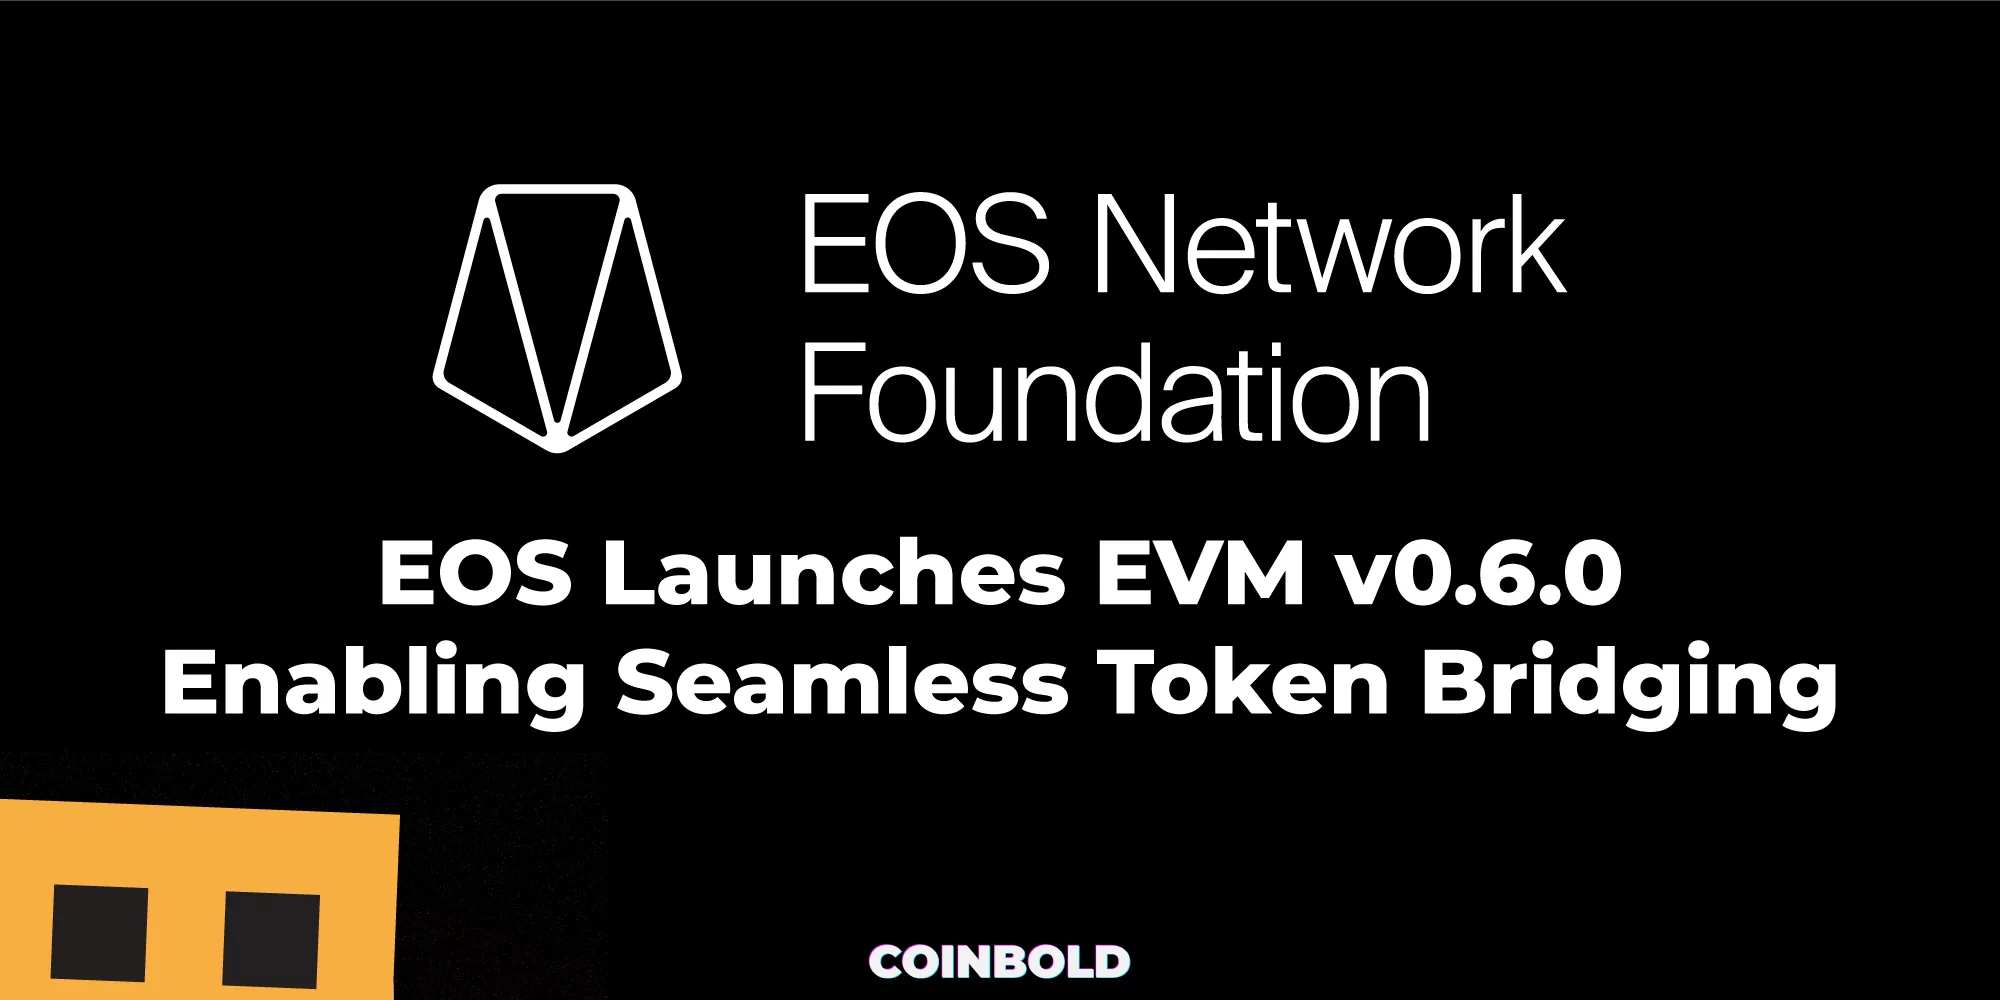 EOS ra mắt EVM v0.6.0 cho phép kết nối token liền mạch